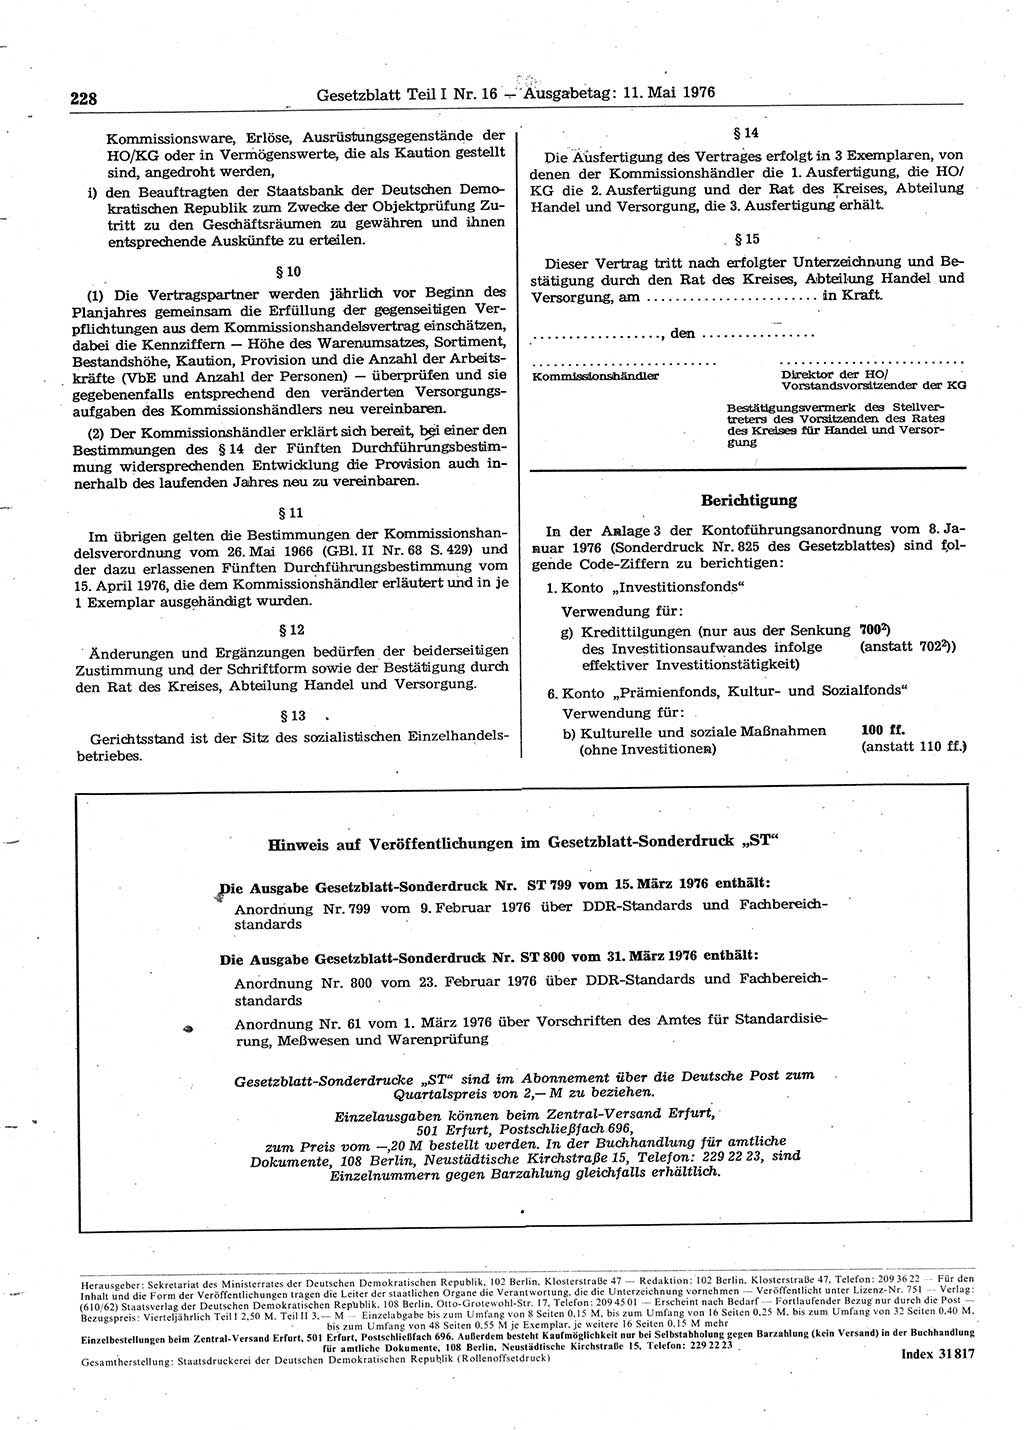 Gesetzblatt (GBl.) der Deutschen Demokratischen Republik (DDR) Teil Ⅰ 1976, Seite 228 (GBl. DDR Ⅰ 1976, S. 228)